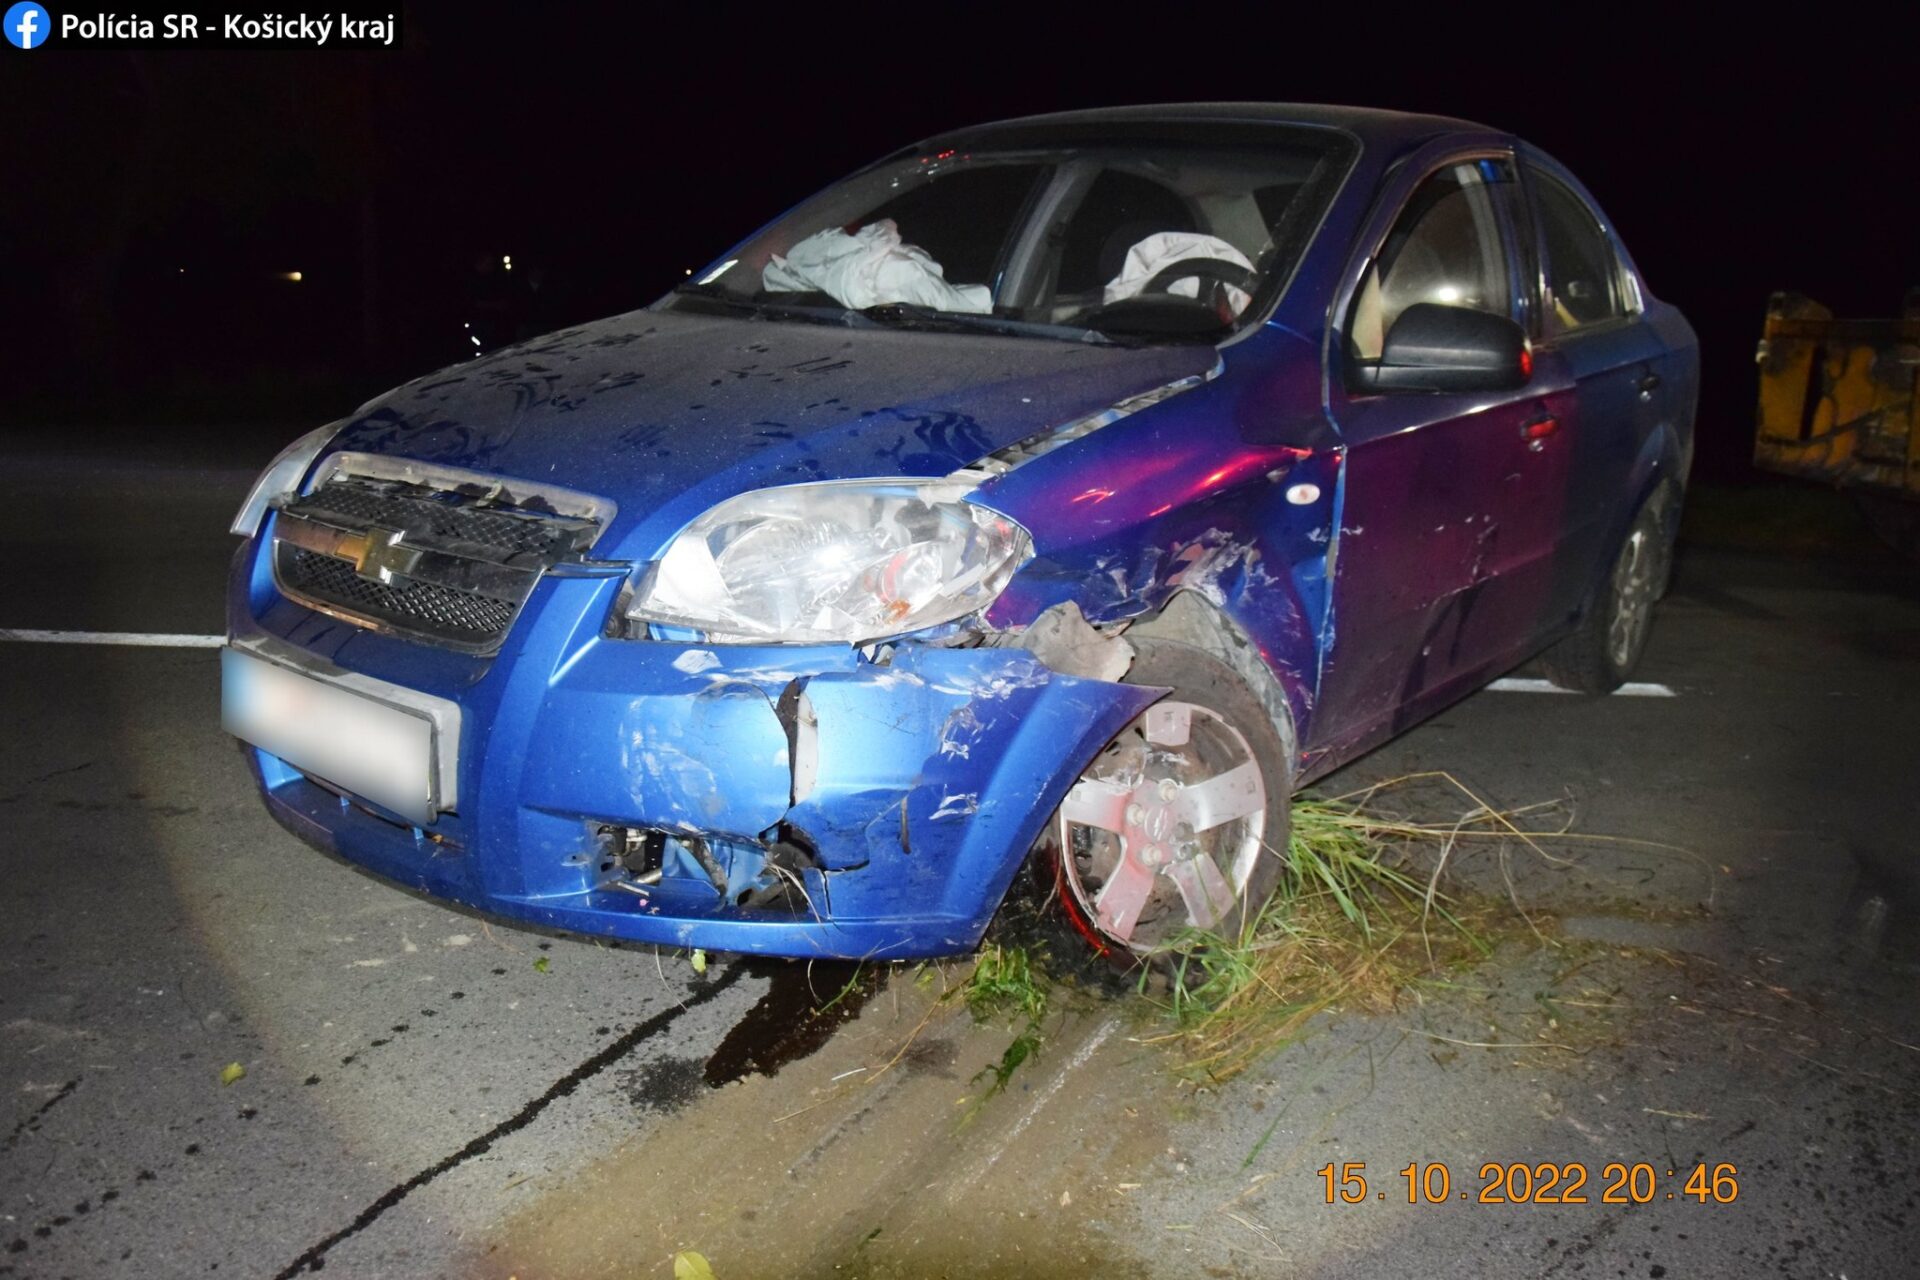 Ďalší vodič pod vplyvom alkoholu spôsobil nehodu (FOTO)